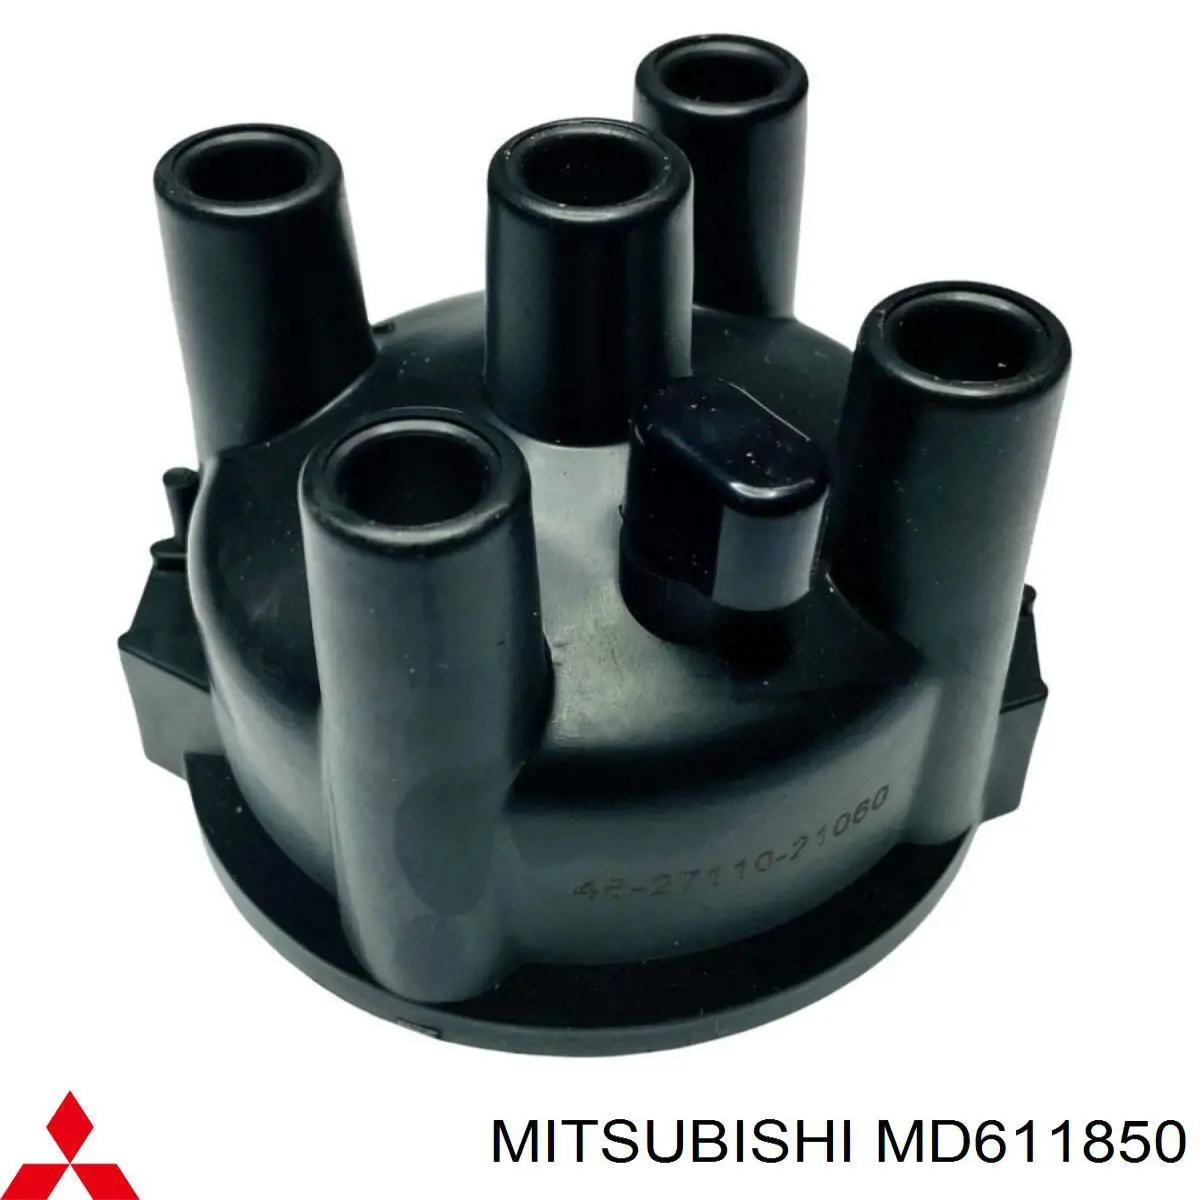 MD611850 Mitsubishi rotor del distribuidor de encendido